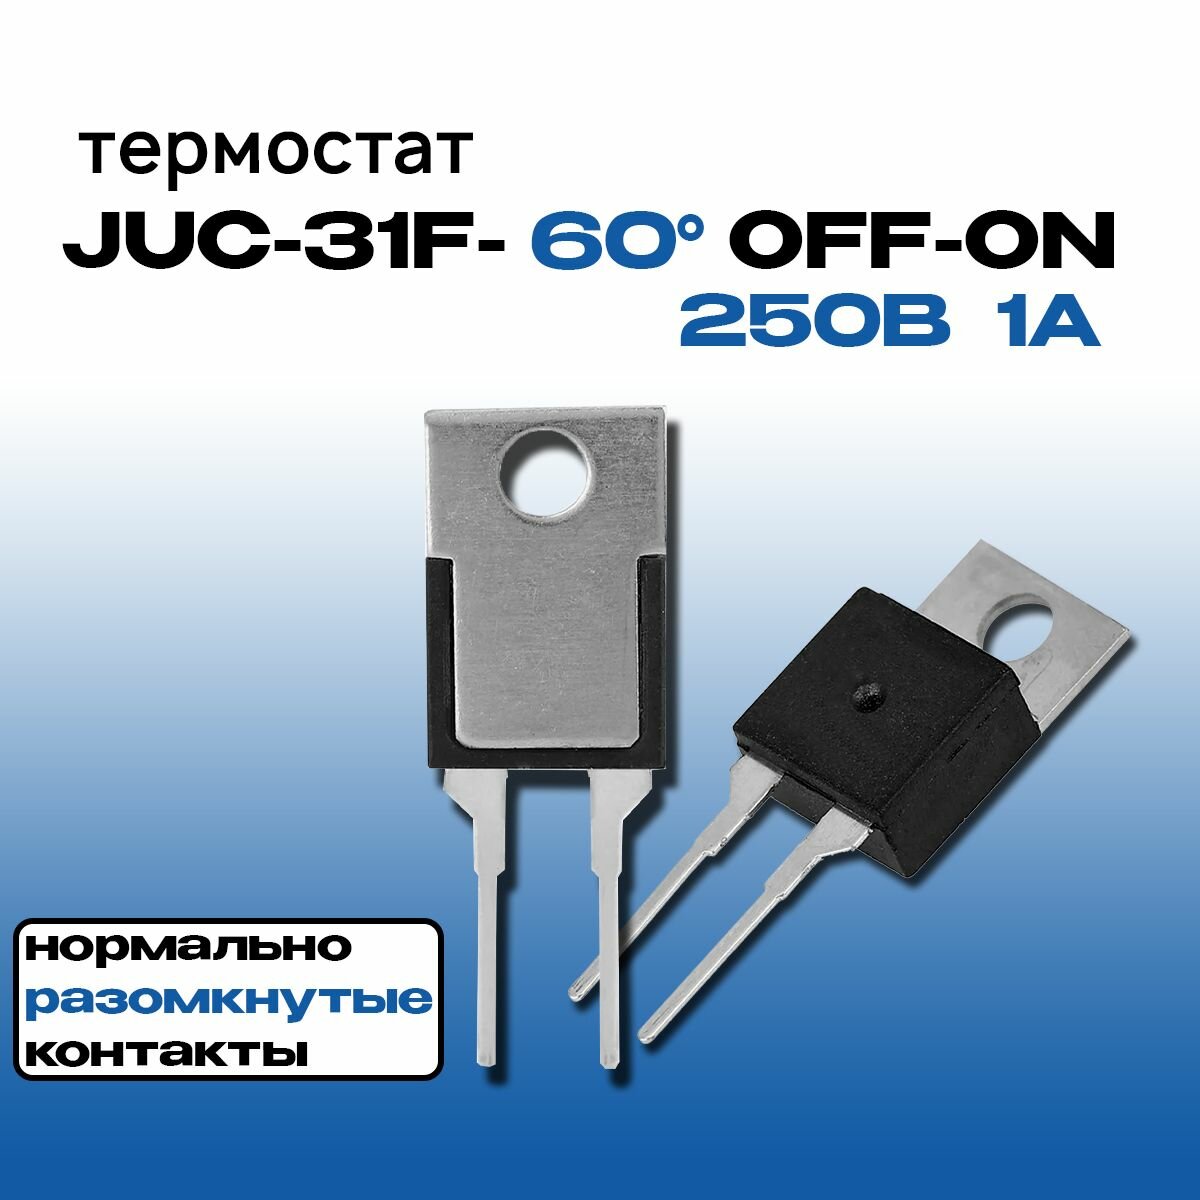 Термостат (термореле) JUC-31F-60 OFF-ON TO-220 250В 1А